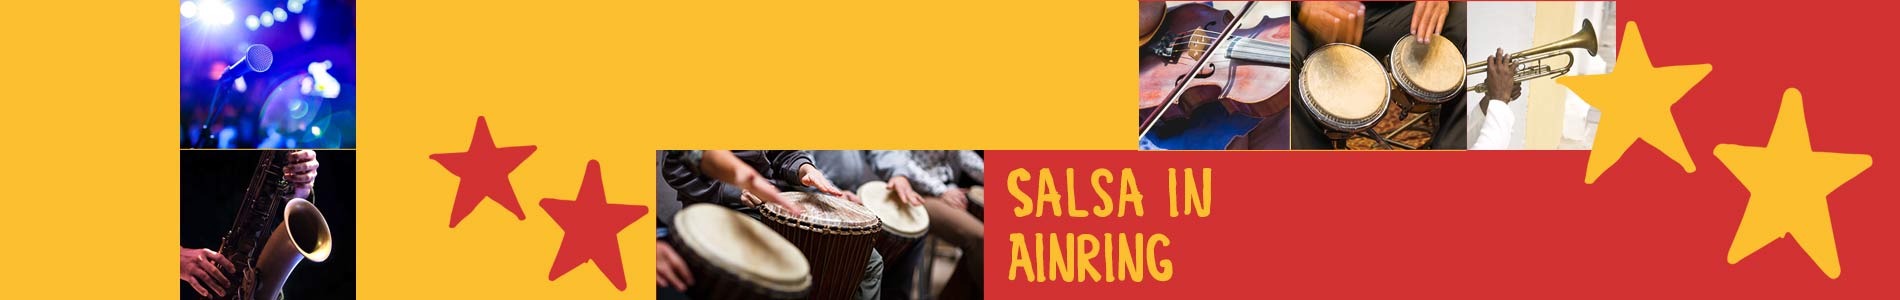 Salsa in Ainring – Salsa lernen und tanzen, Tanzkurse, Partys, Veranstaltungen